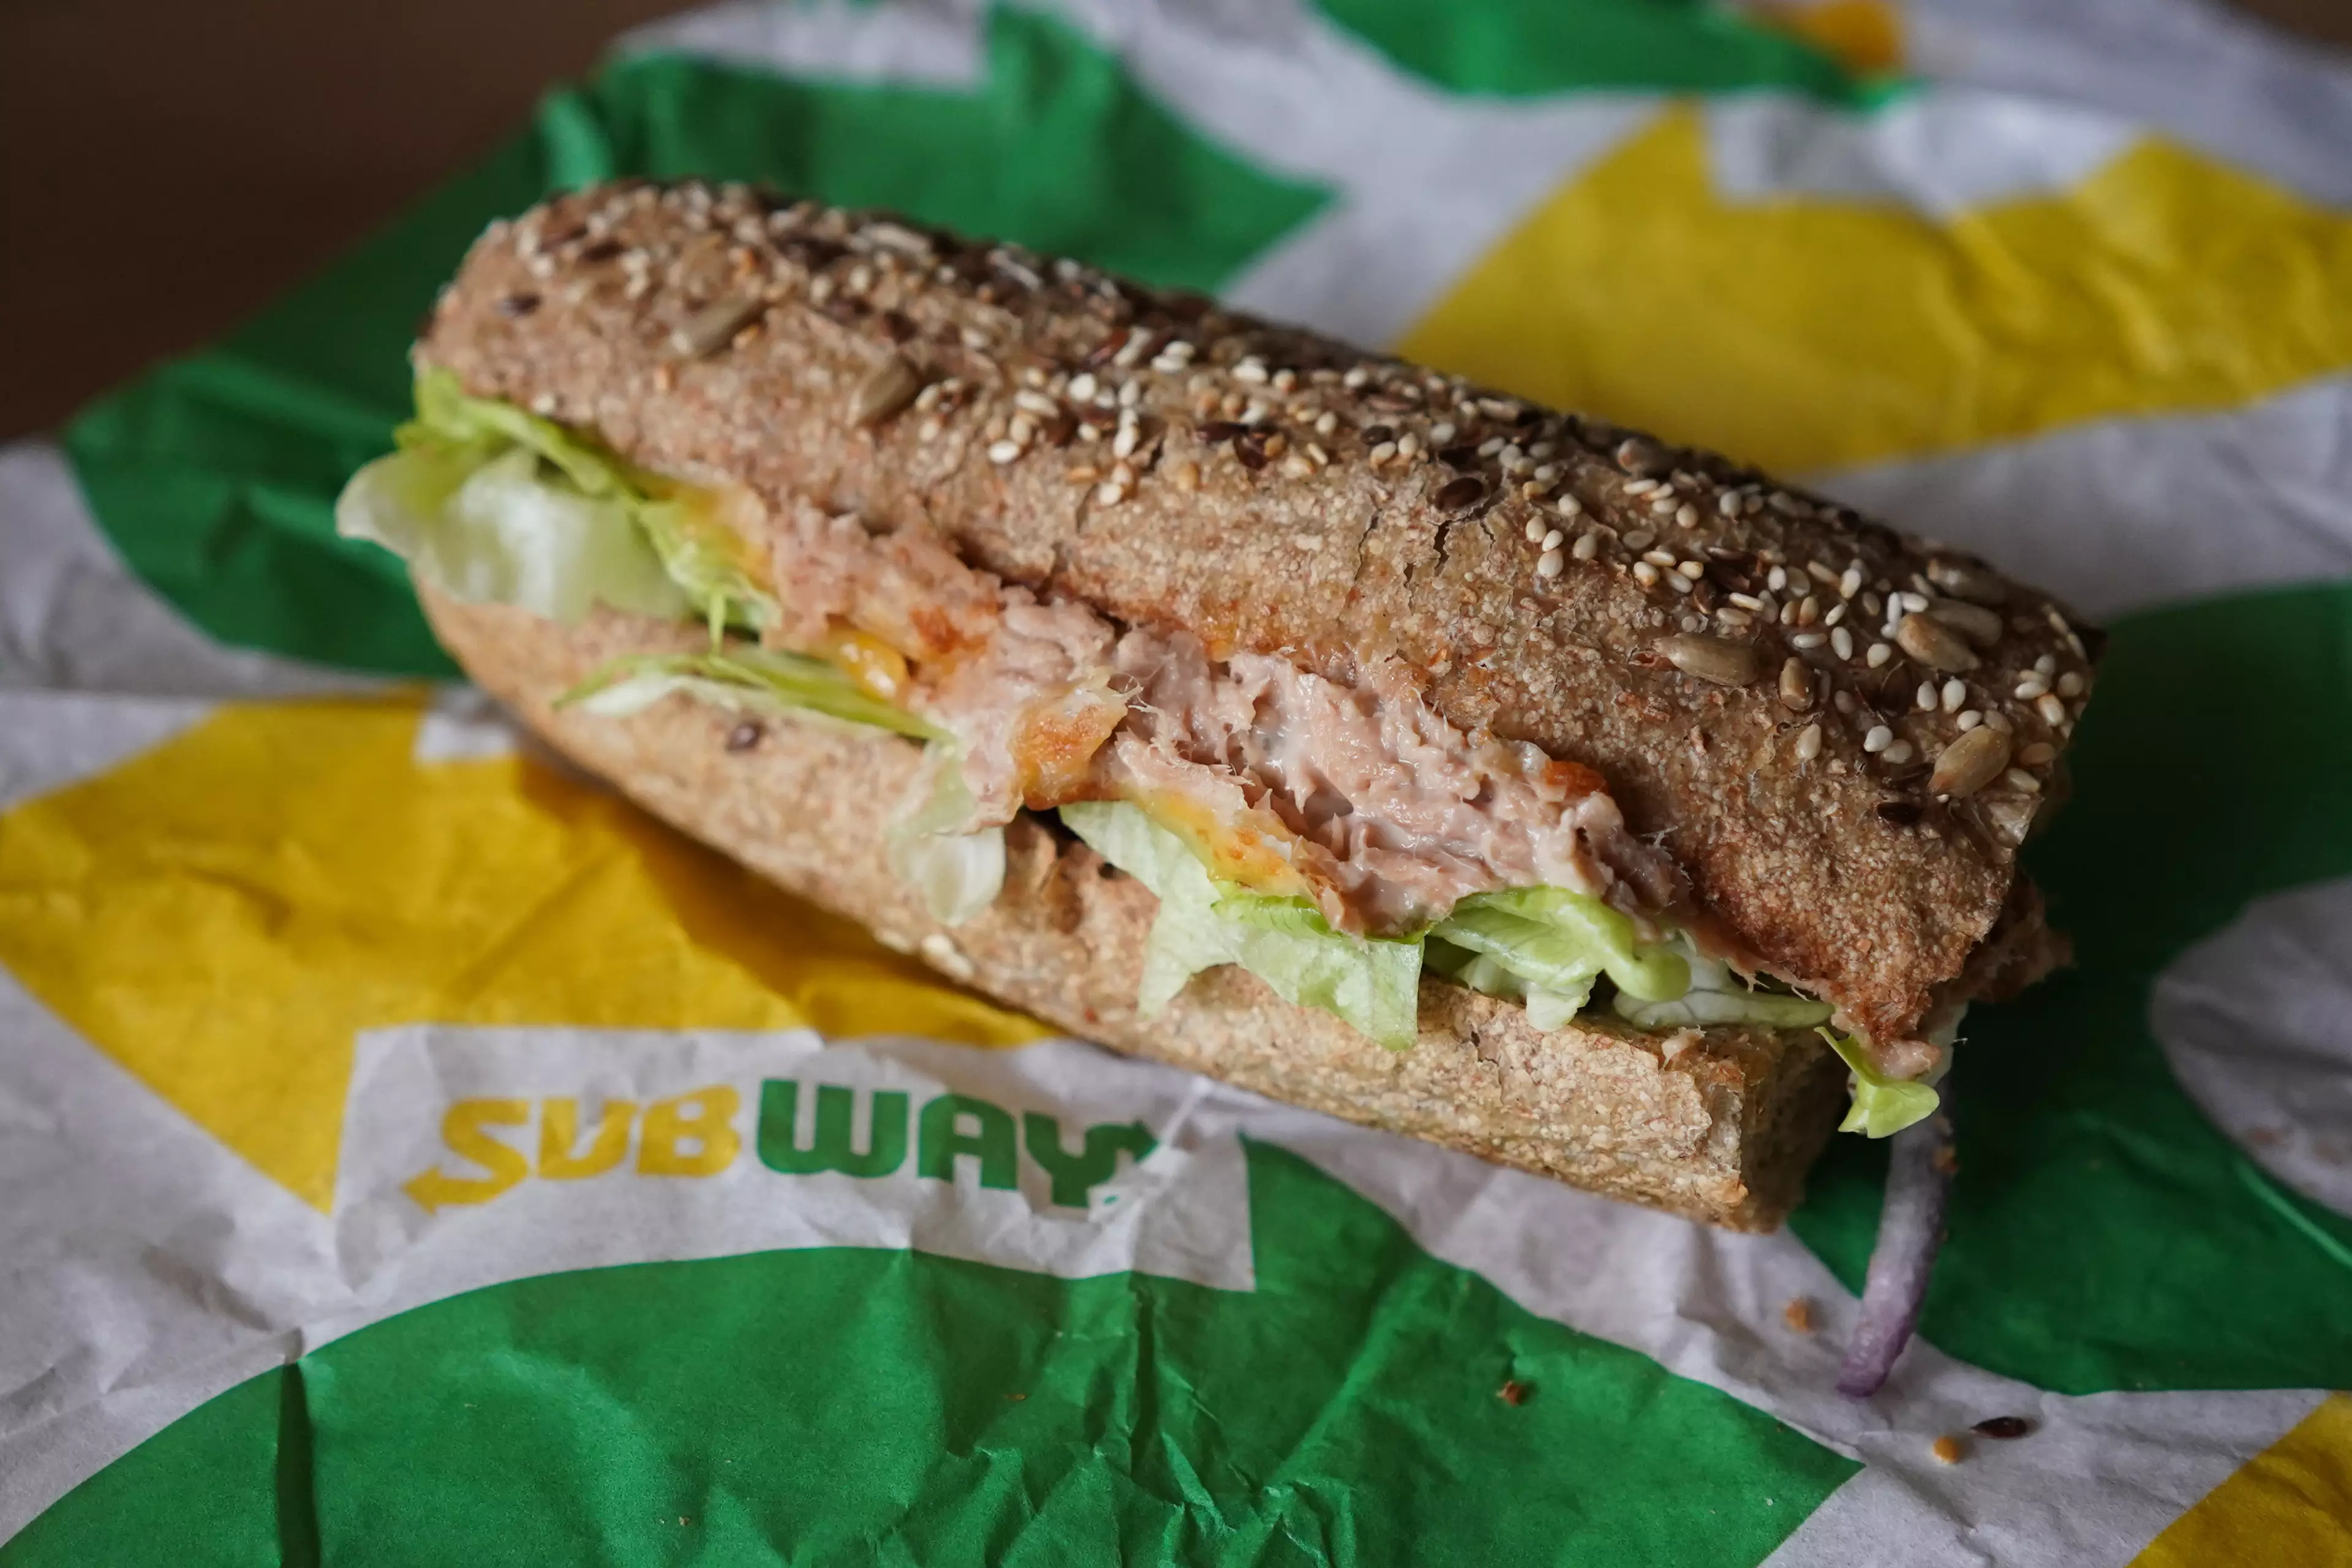 A Subway tuna sandwich.